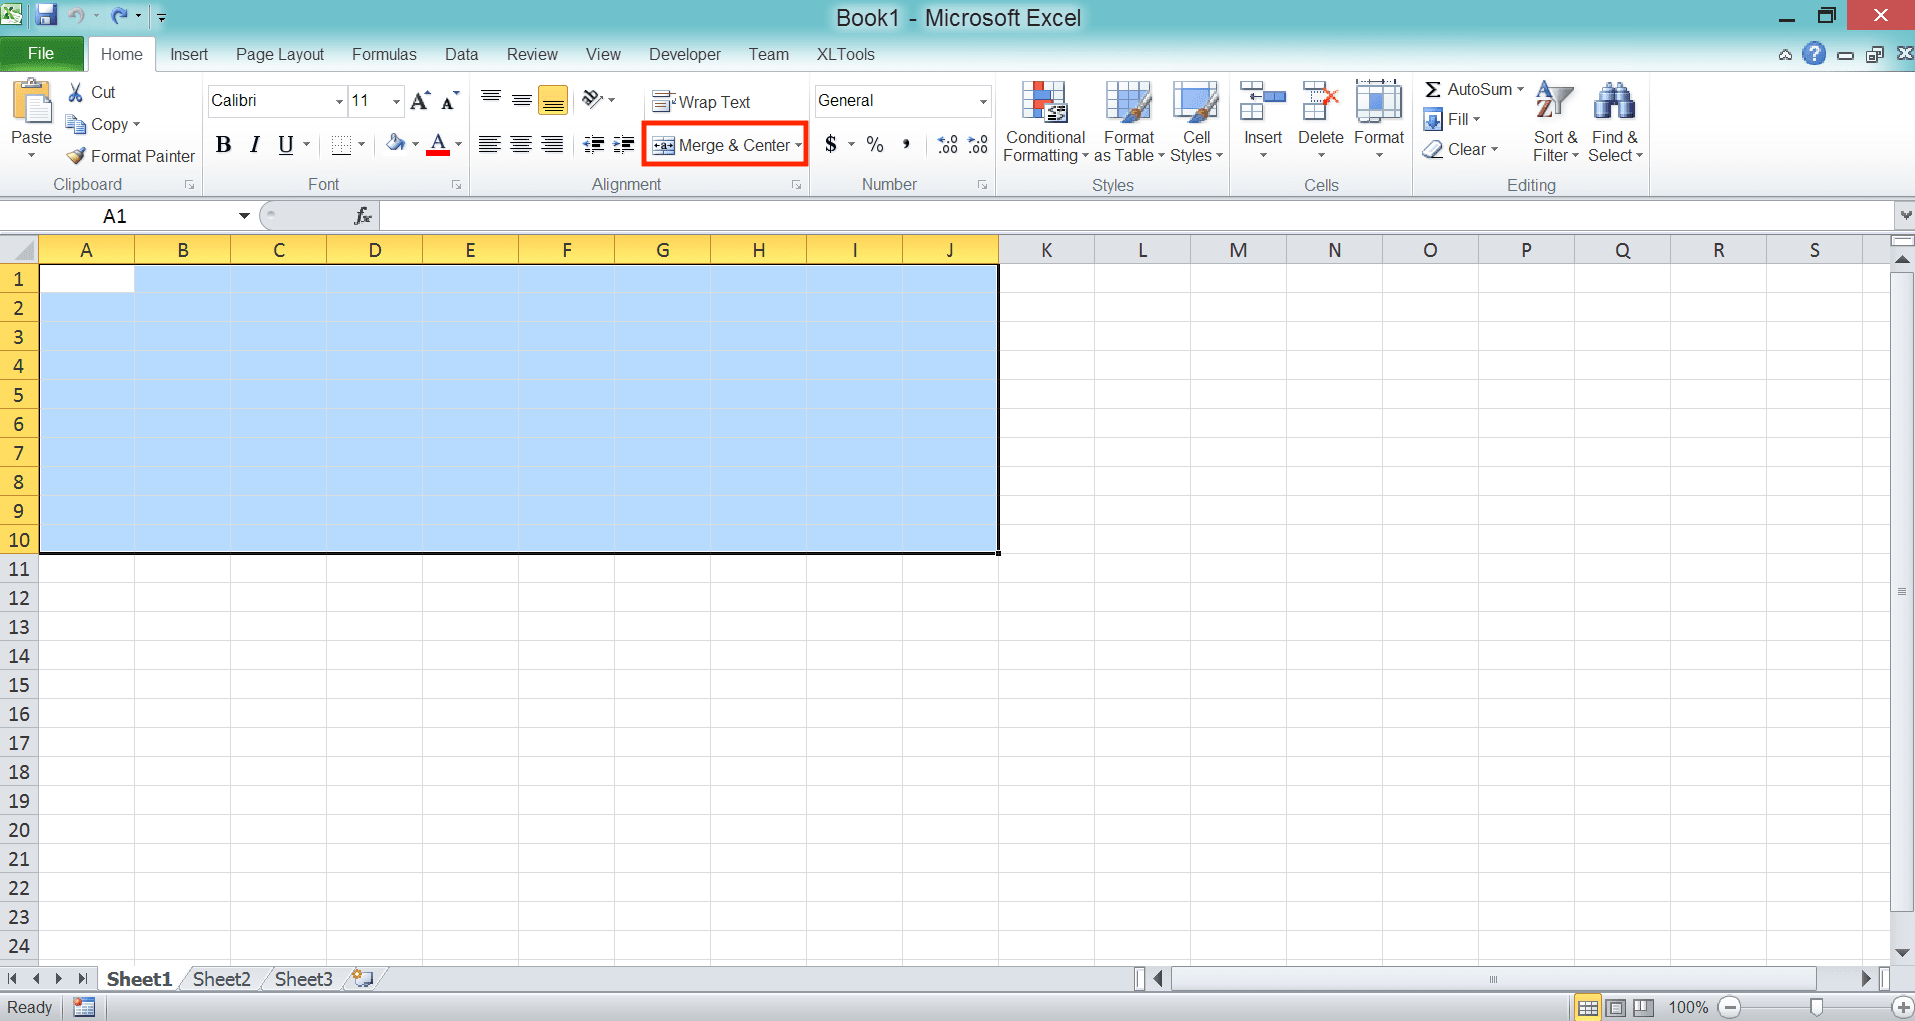 Cara Menghapus/Menghilangkan Garis di Excel - Screenshot Langkah Metode Merge Cells 2